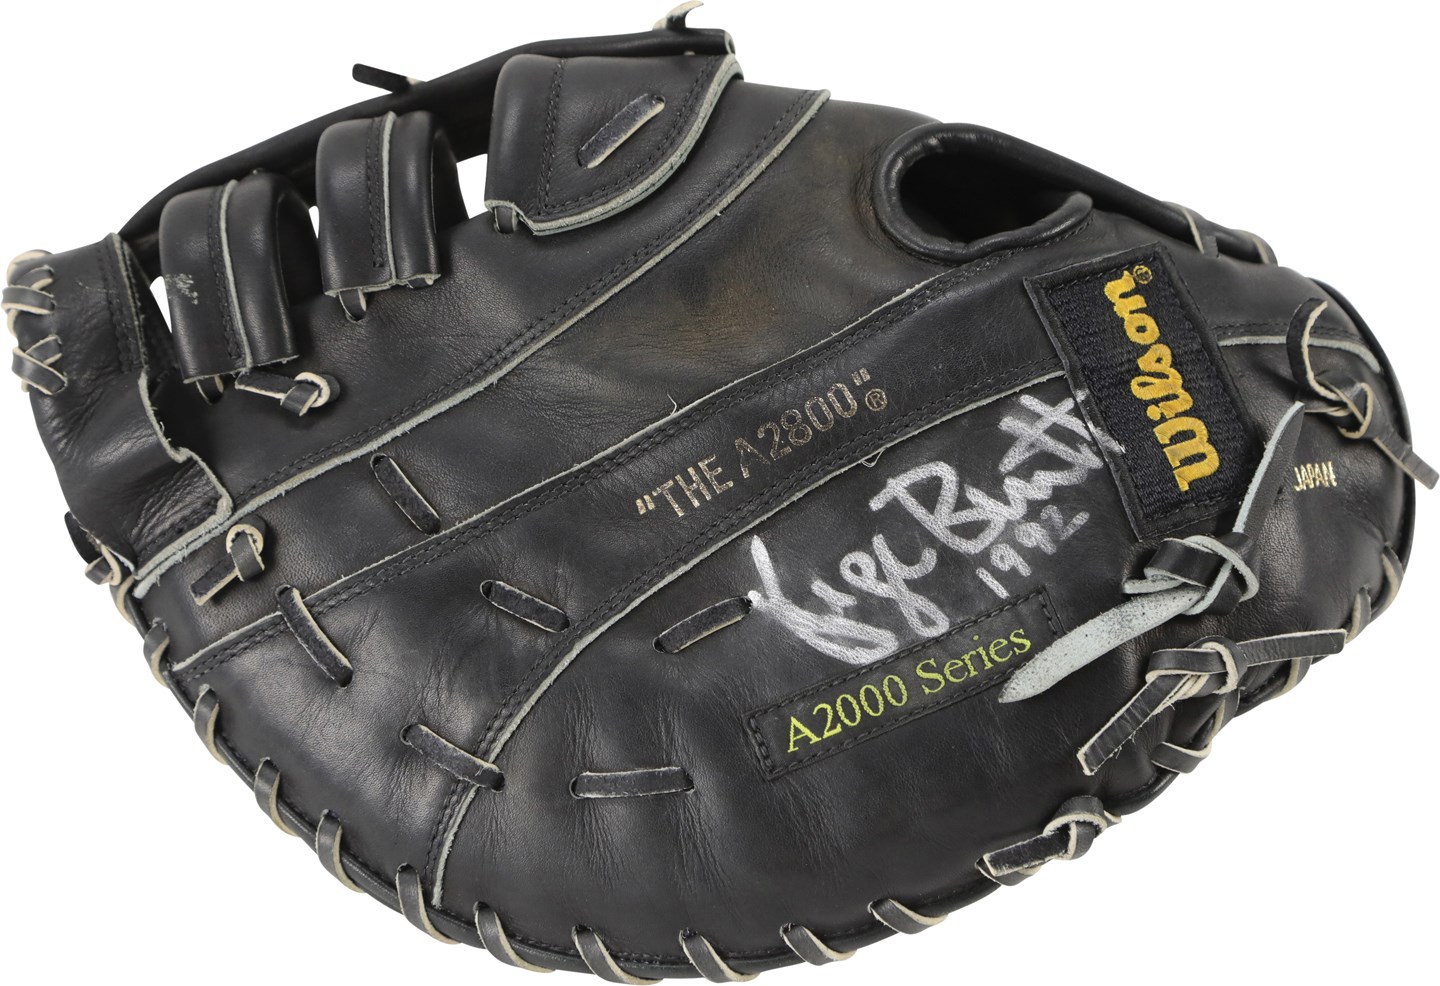 Baseball Equipment - 1992 George Brett Kansas City Royals Signed Game Used Glove (PSA & Brett LOA)